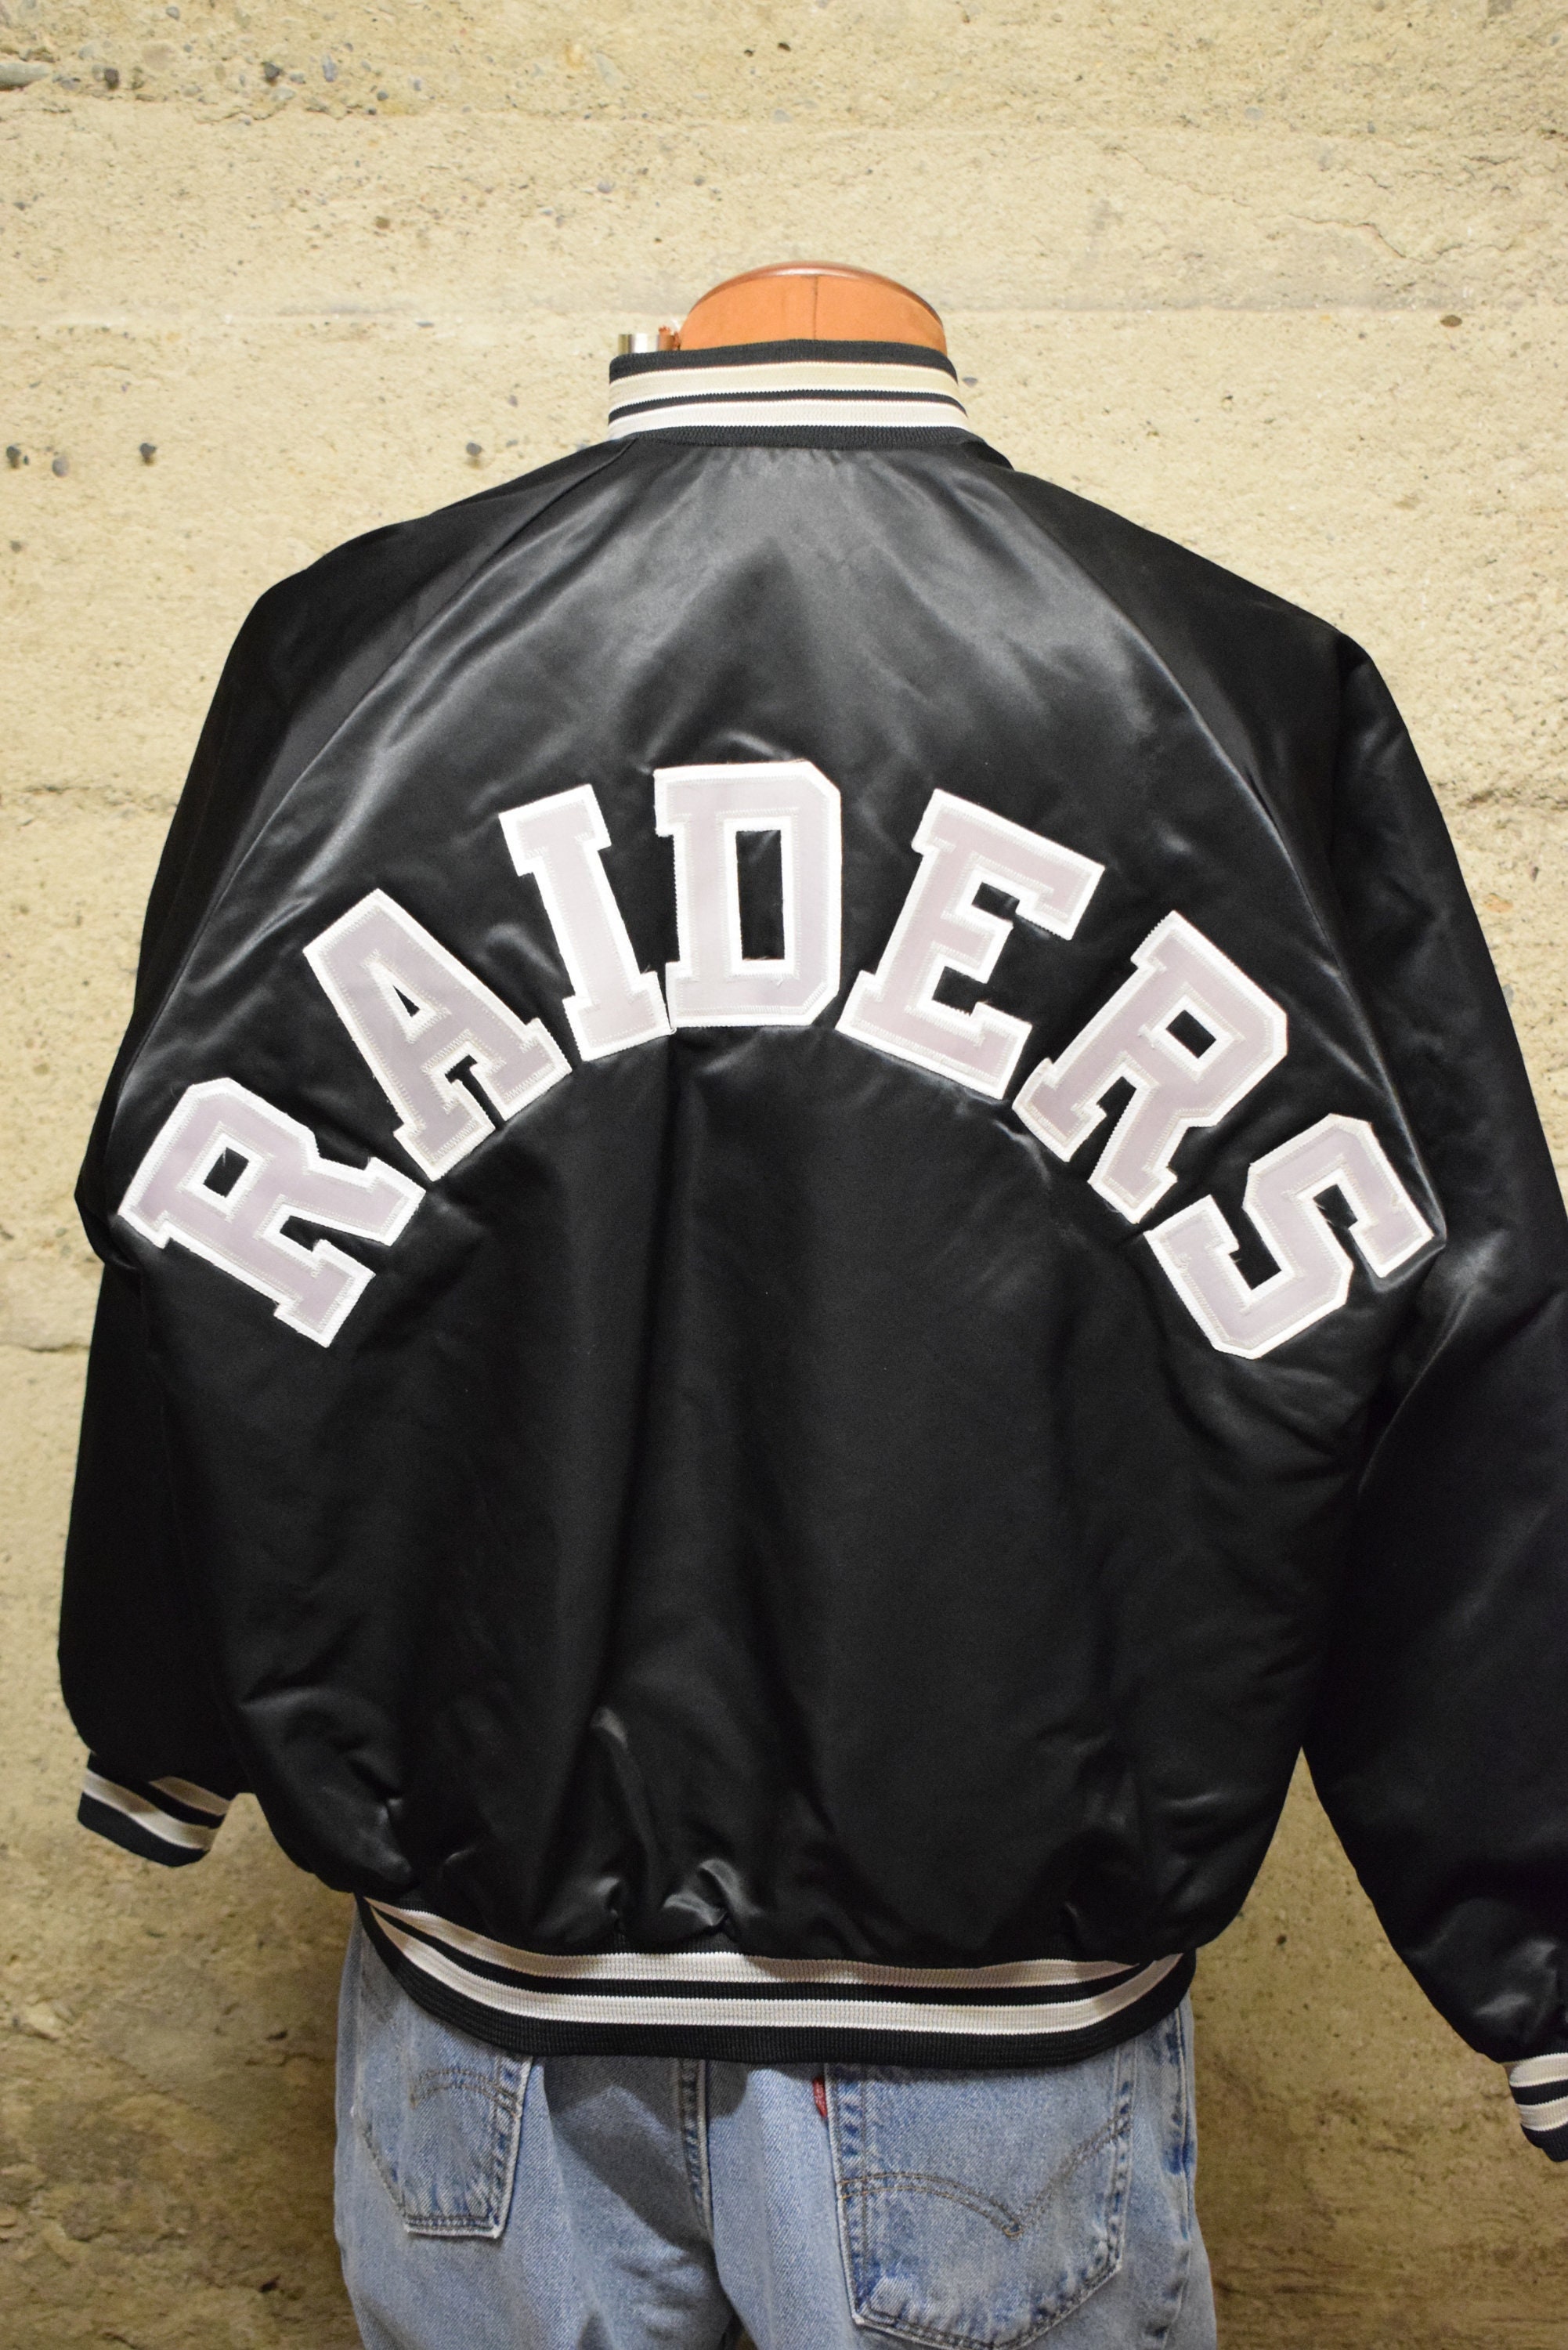 Vintage Raiders Jacket - Etsy